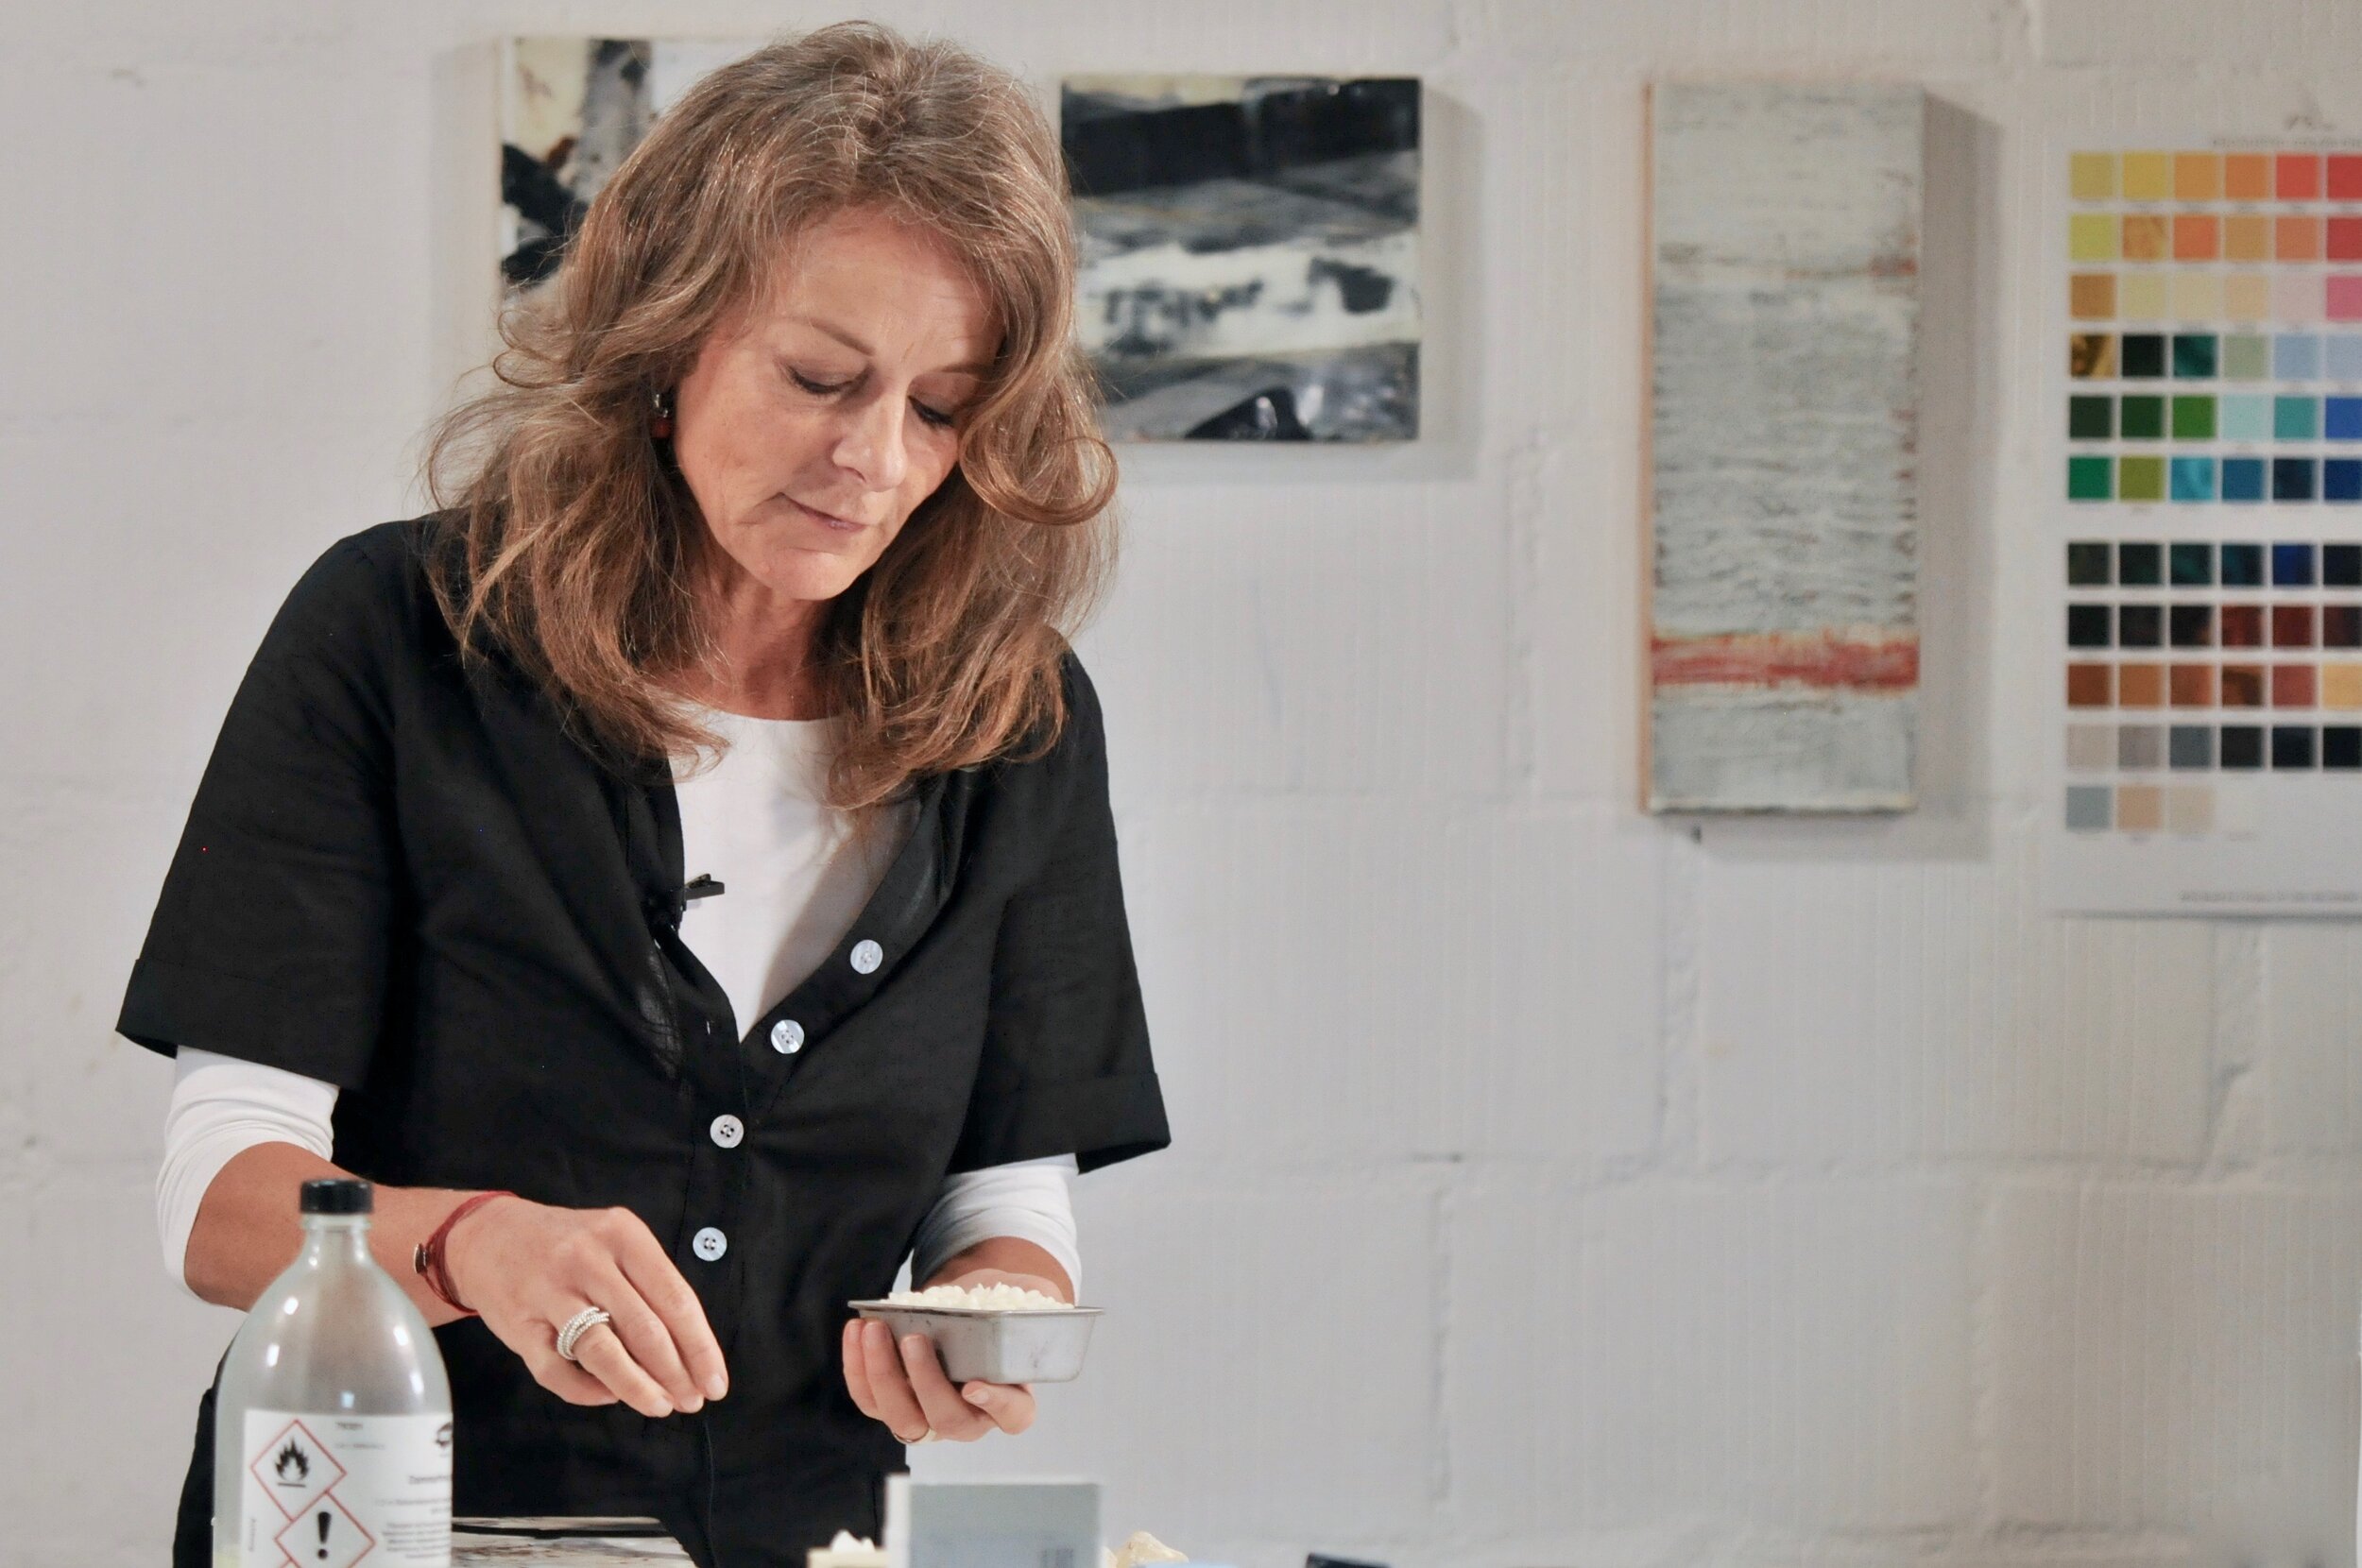 Artist Spotlight: Leslie Giuliani — R&F Handmade Paints